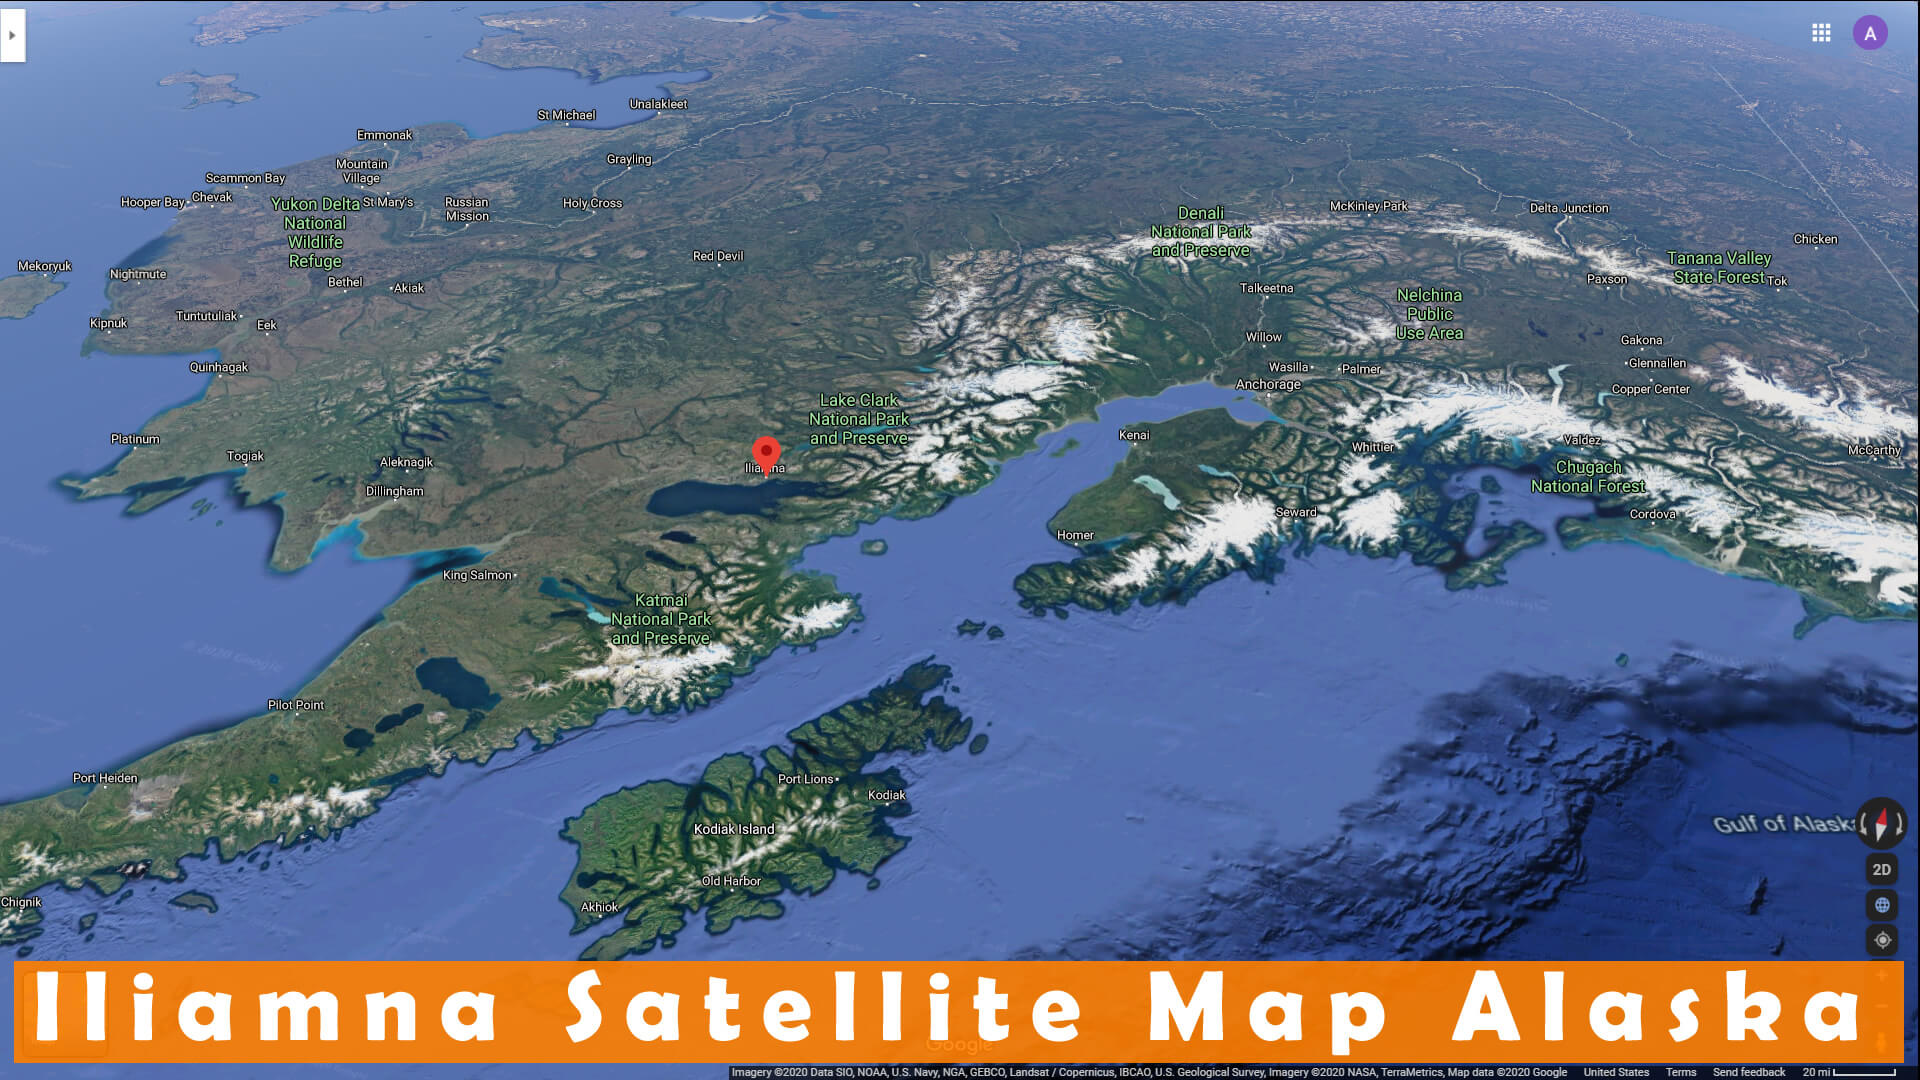 Iliamna Satellite Map Alaska